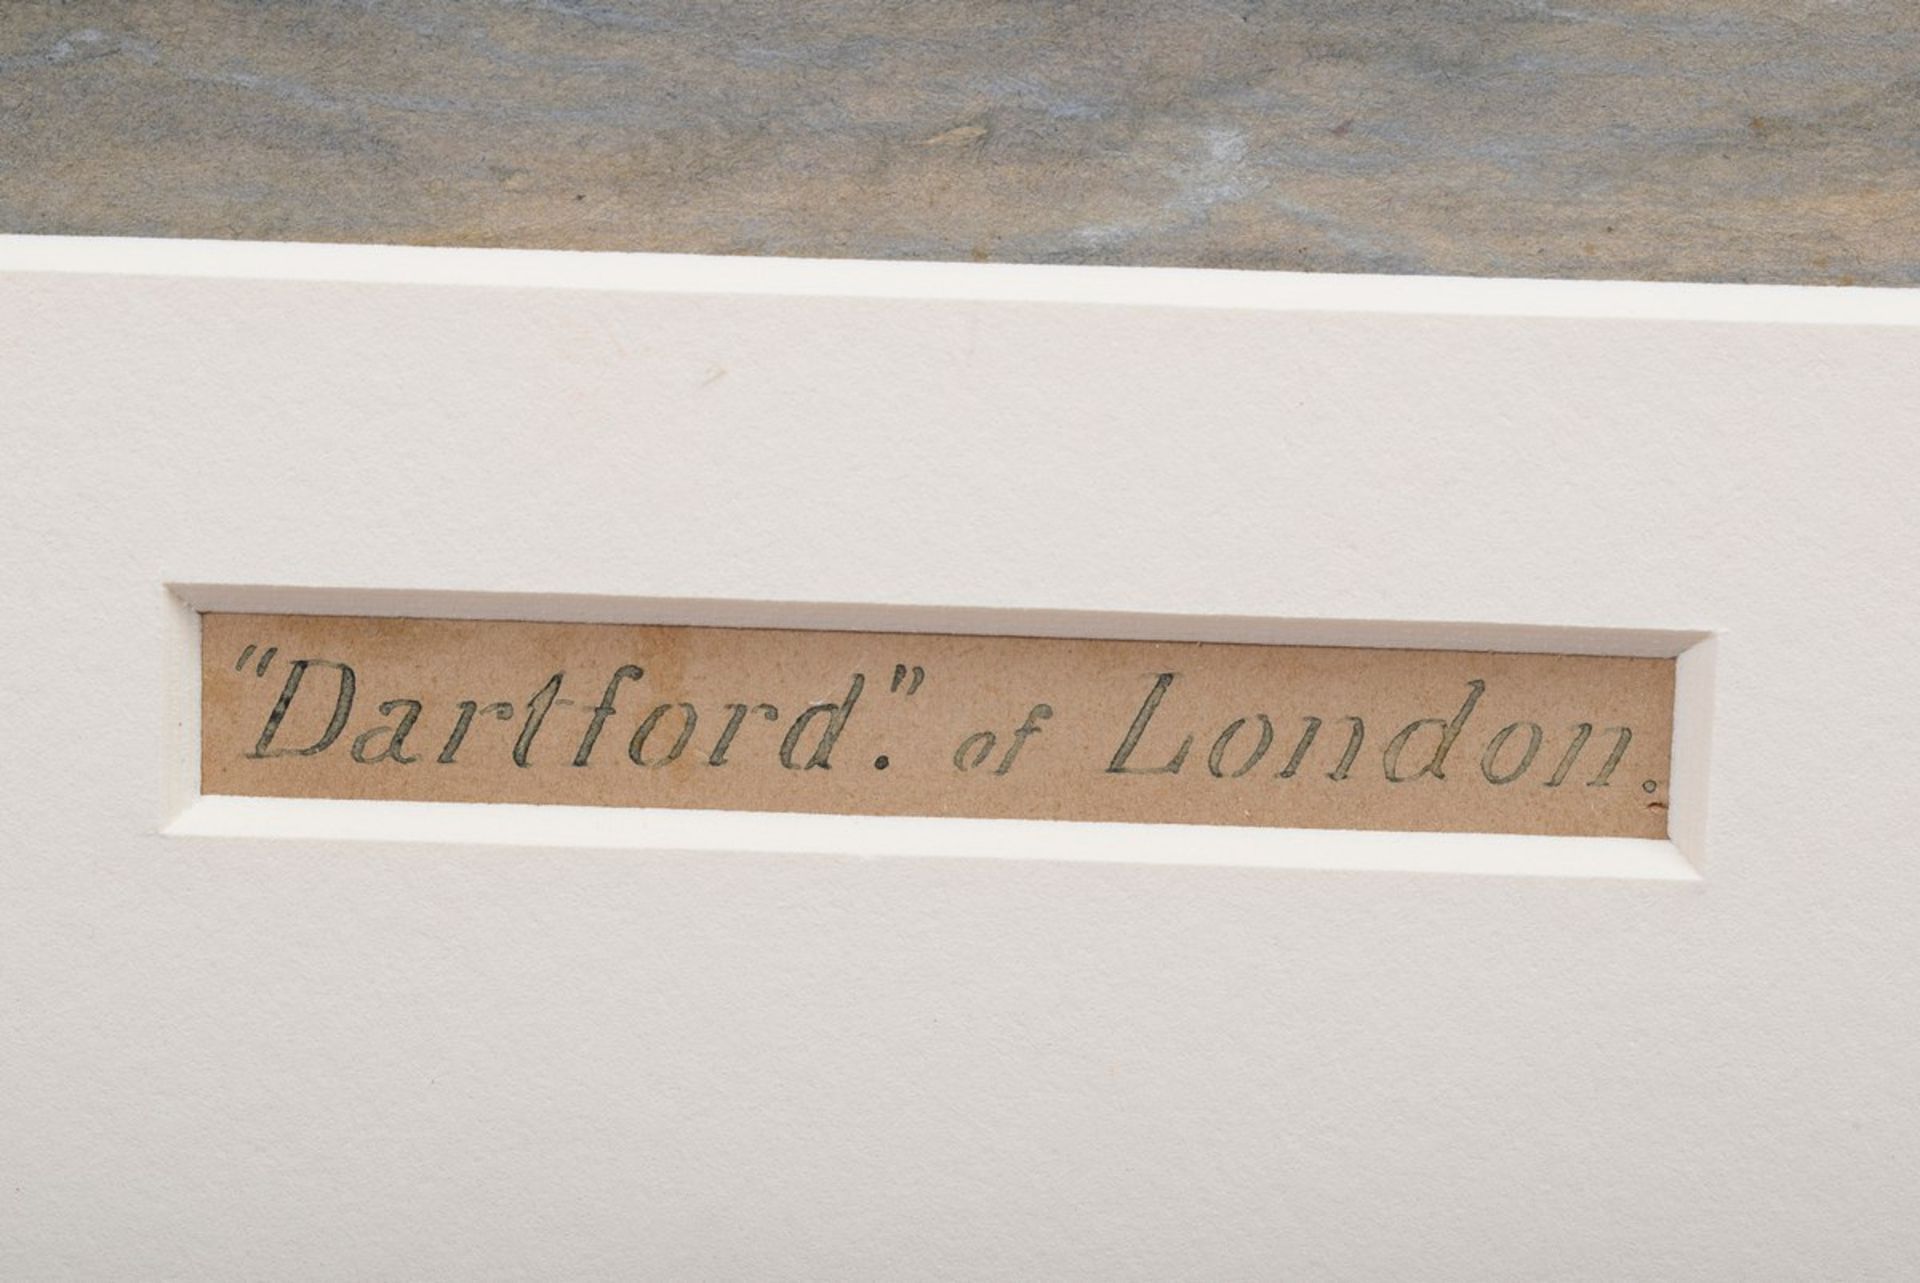 Pervical, Harold (1868-1914) "Kapitänsbild Dartford of London" 1899, Aquarell/P - Image 5 of 5